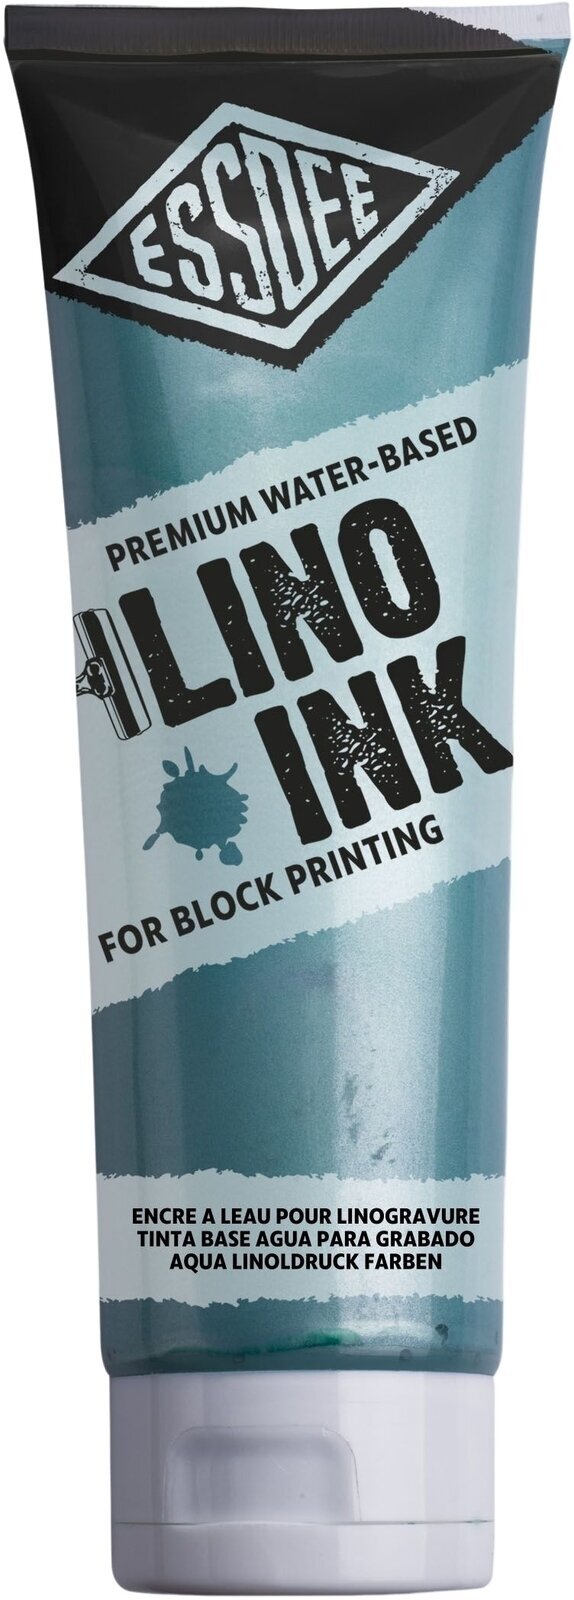 Verf voor linosnede Essdee Block Printing Ink Verf voor linosnede Pearlescent Green 300 ml